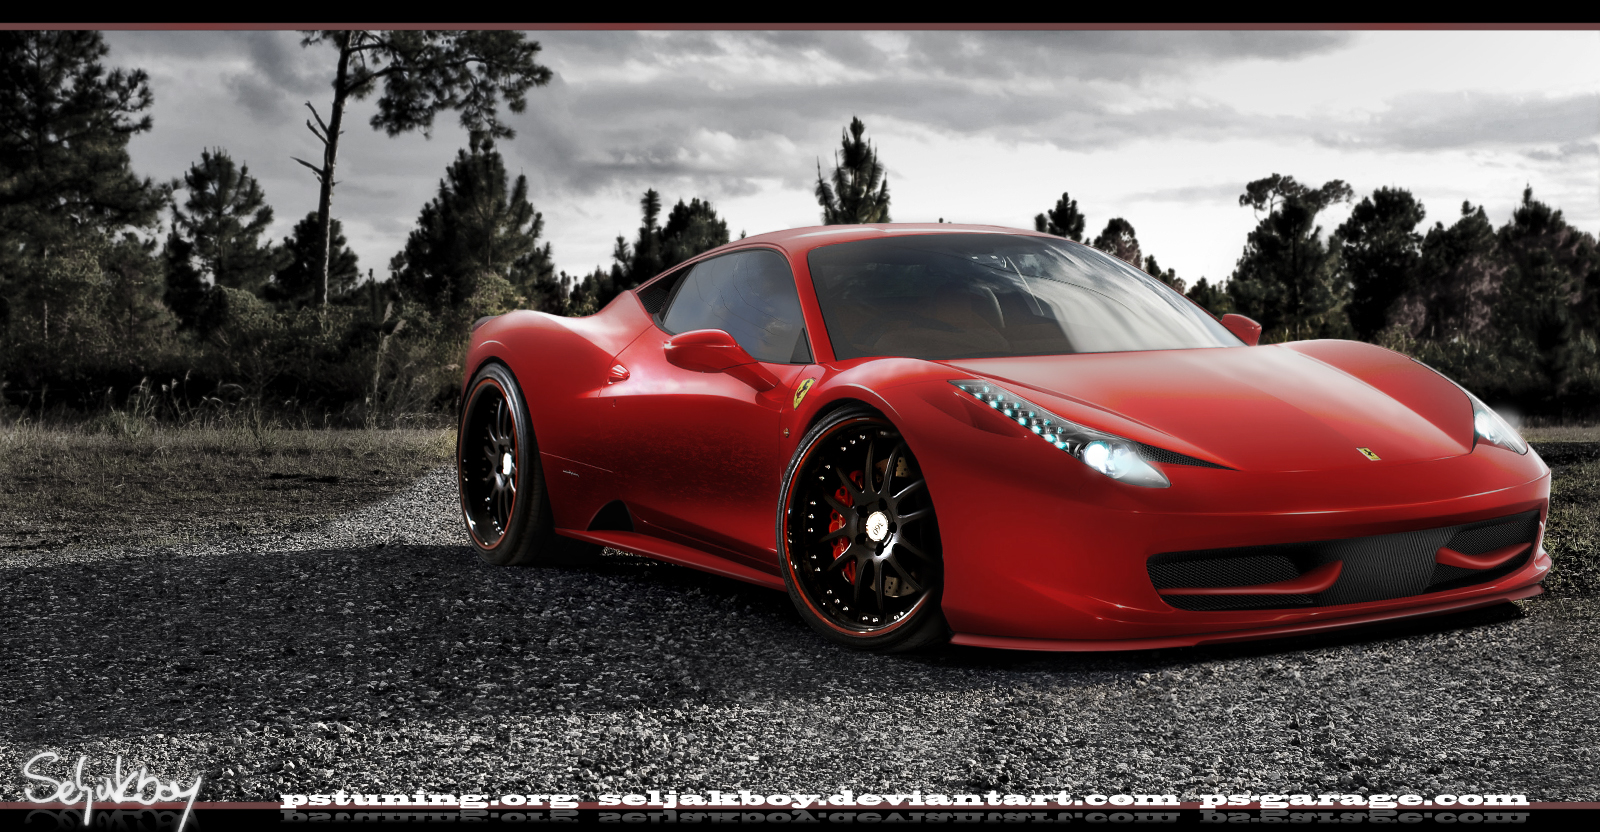 Ferrari Wallpaper 1080p 142121g 4usky